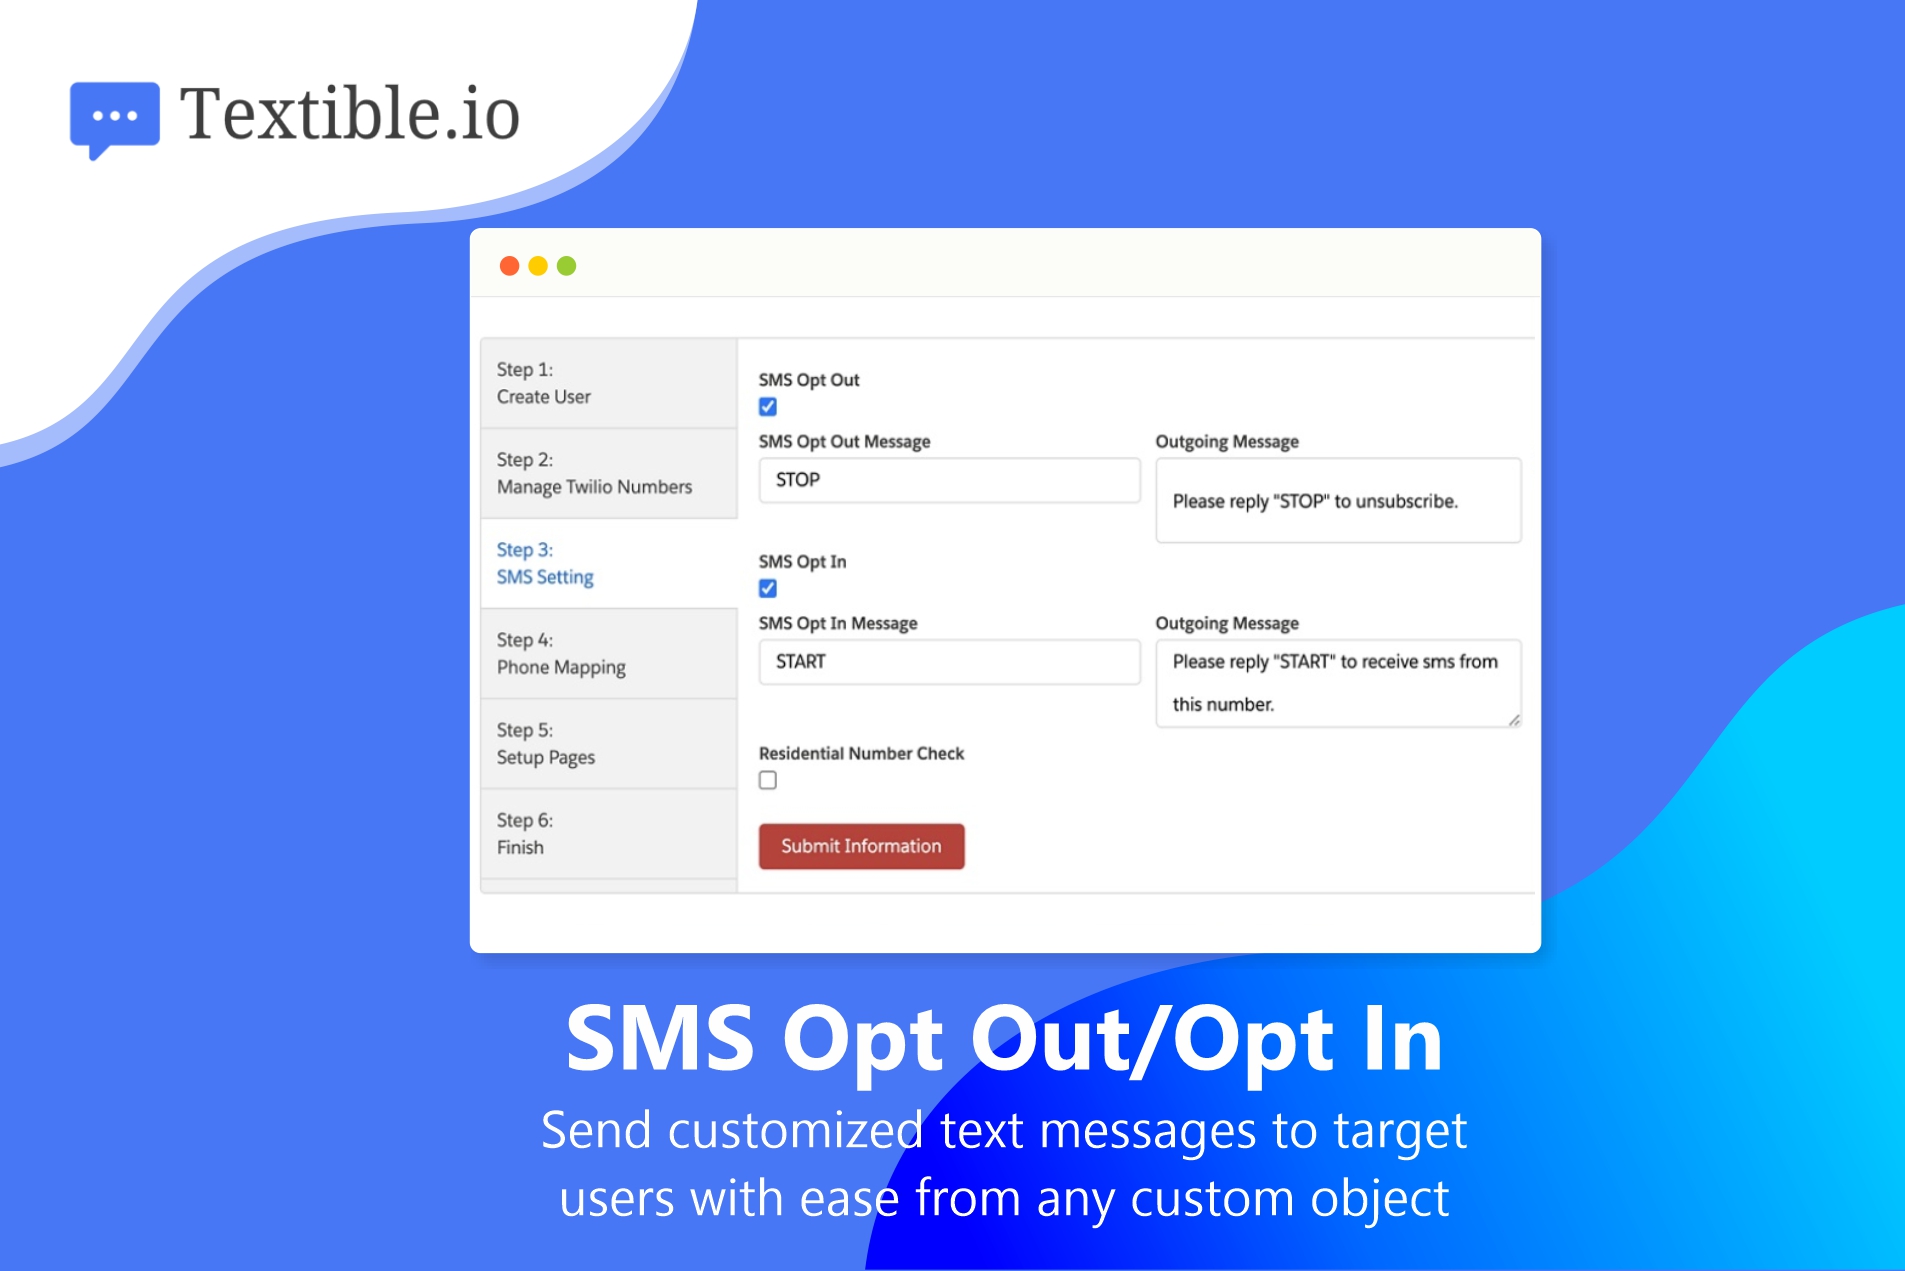 Salesforce SMS App